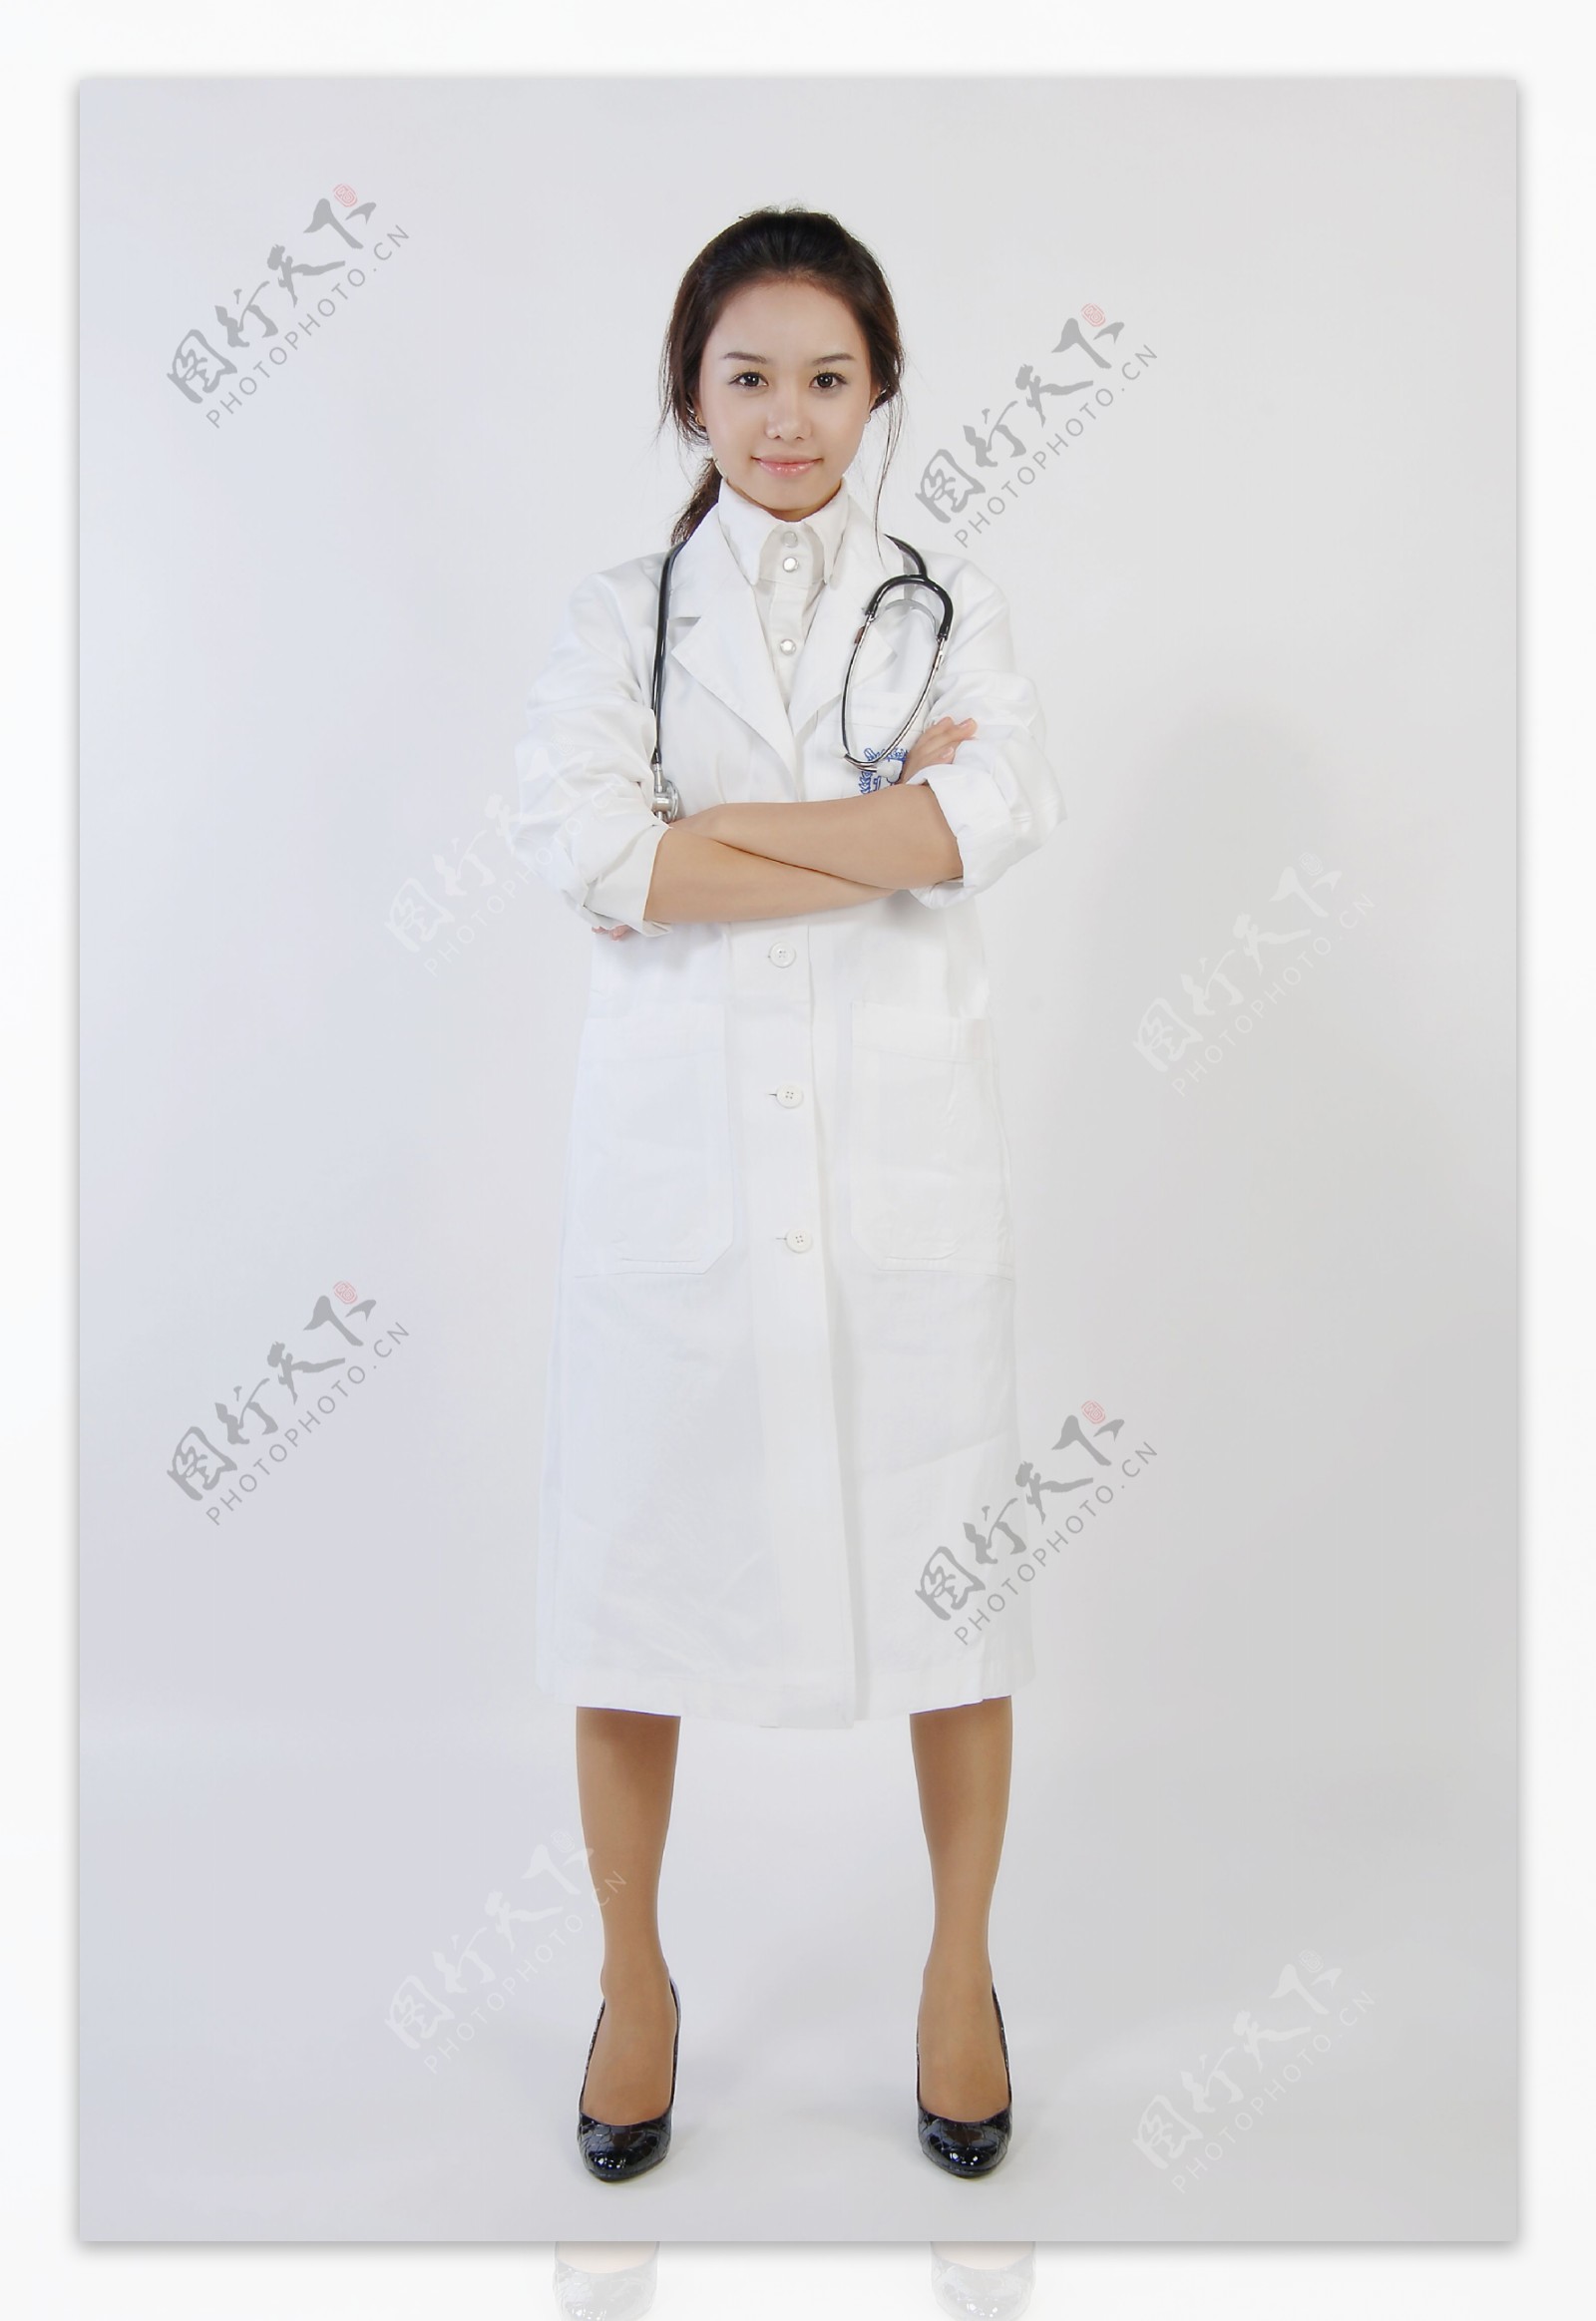 女医生护士14图片